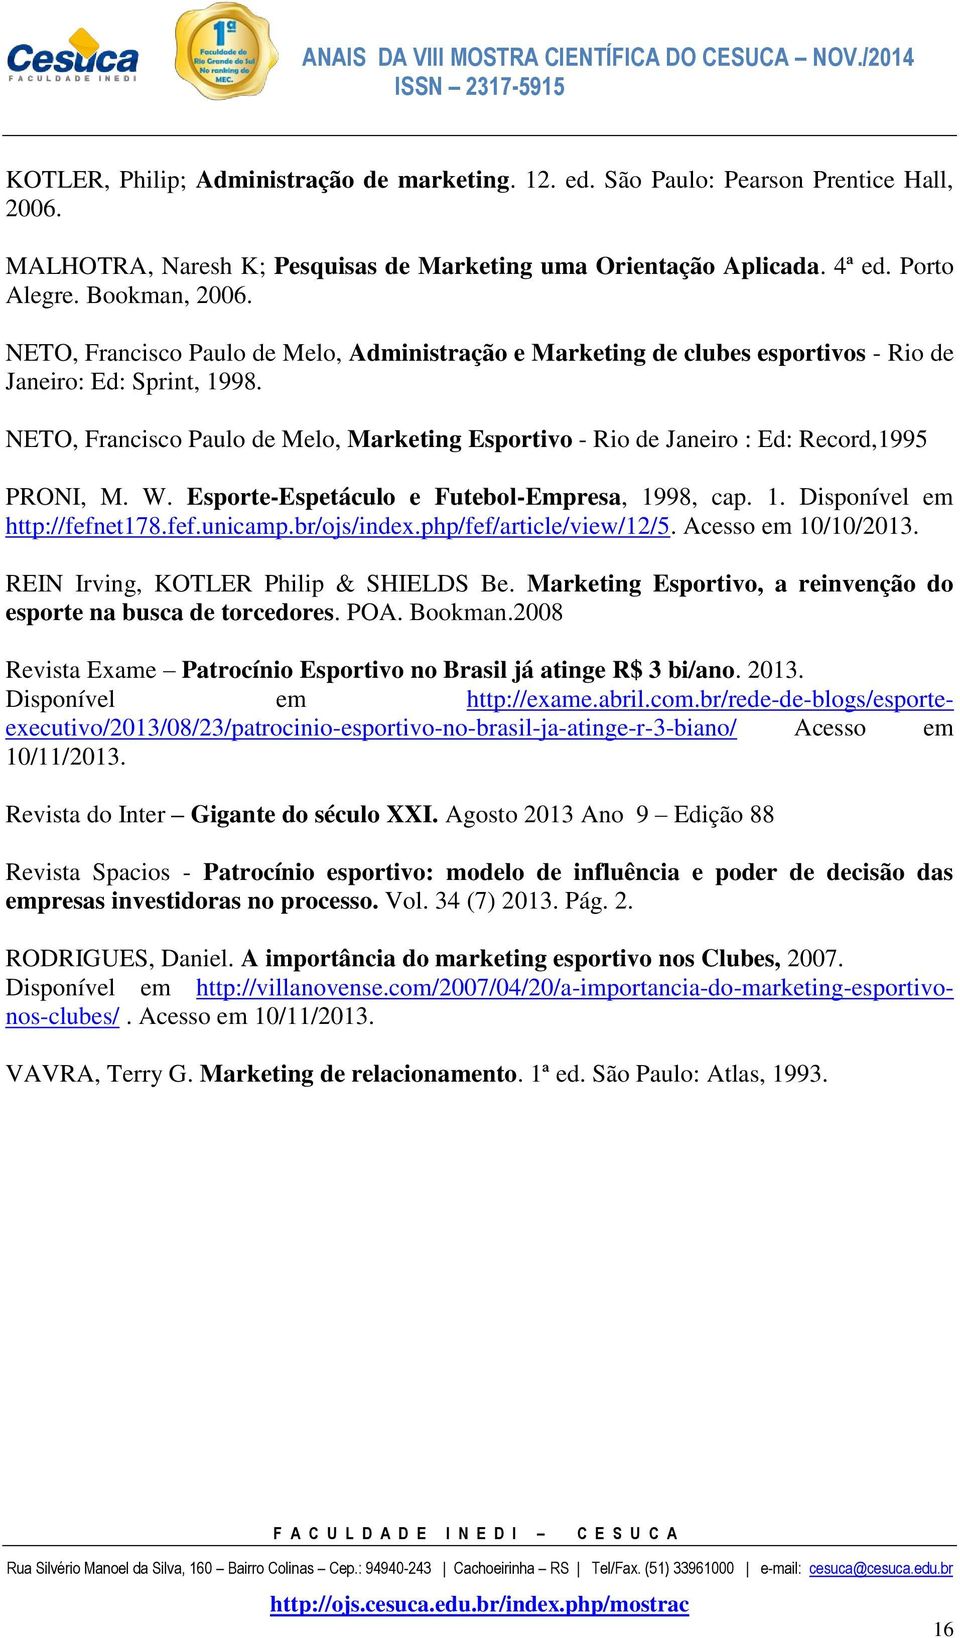 NETO, Francisco Paulo de Melo, Marketing Esportivo - Rio de Janeiro : Ed: Record,1995 PRONI, M. W. Esporte-Espetáculo e Futebol-Empresa, 1998, cap. 1. Disponível em http://fefnet178.fef.unicamp.